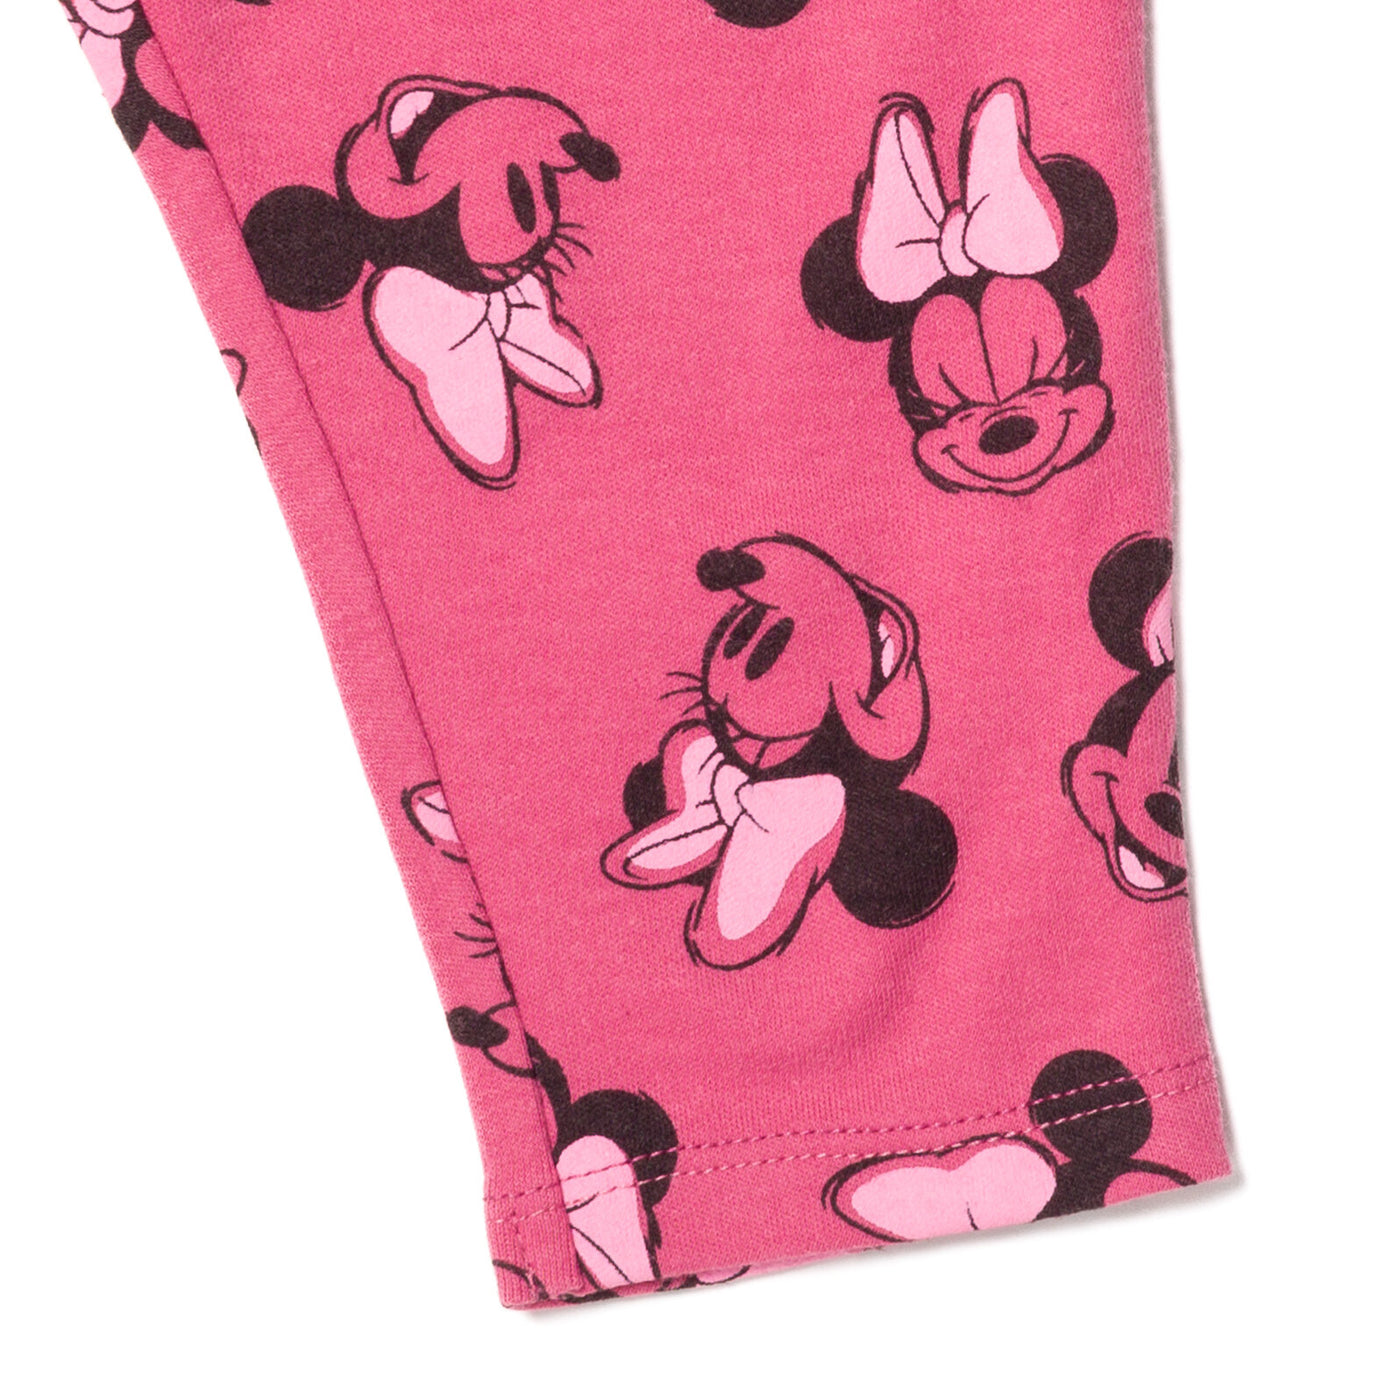 Pack de 2 pantalones de Minnie Mouse